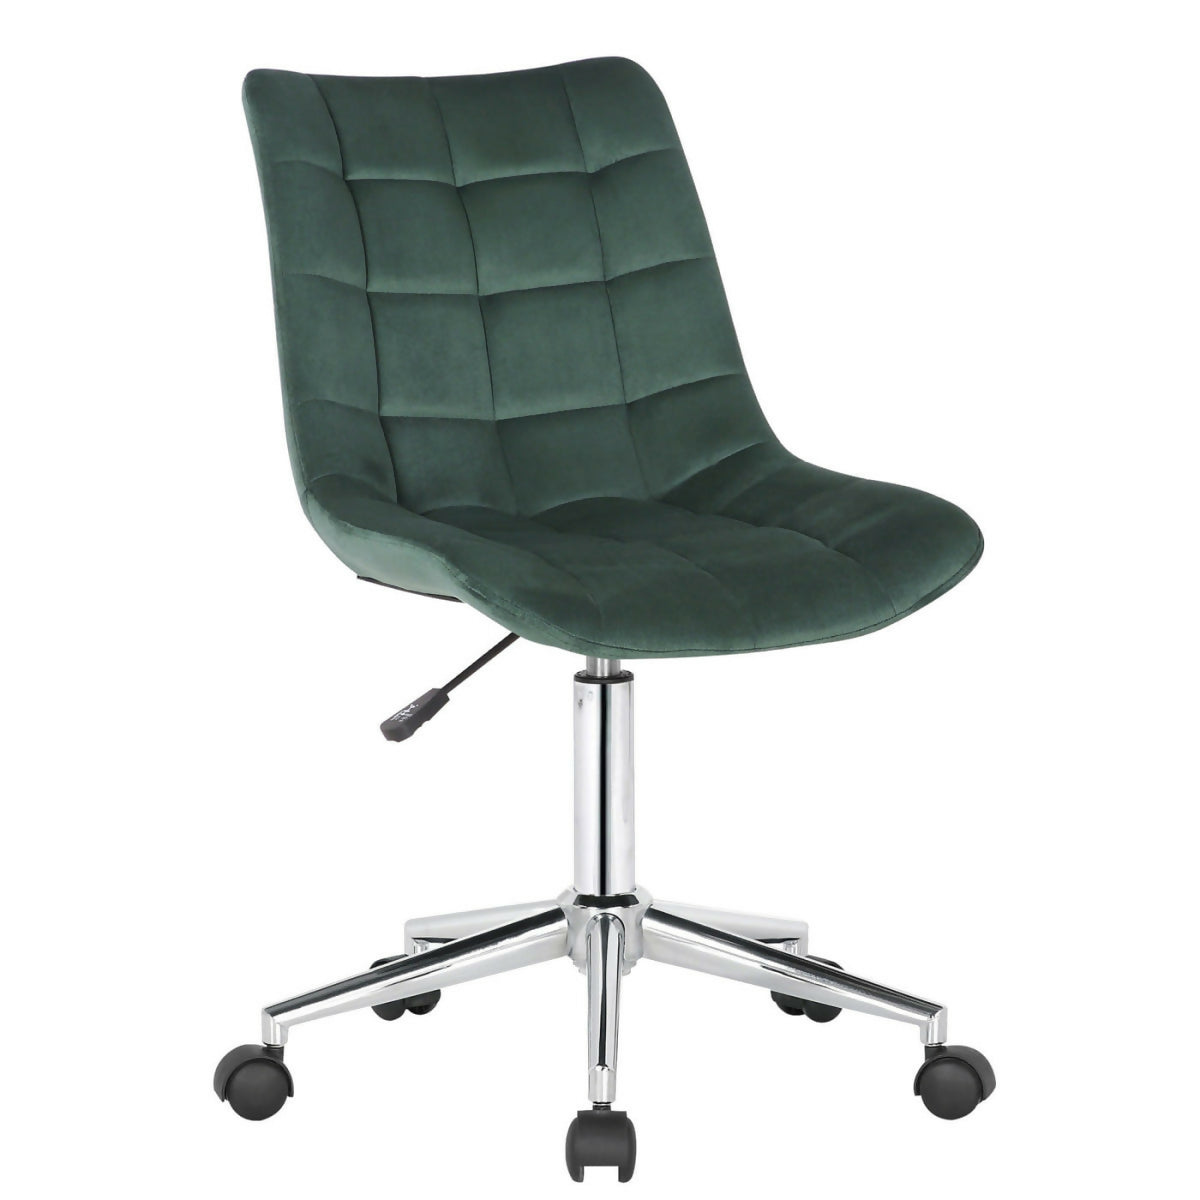 Medford office chair - Green velvet